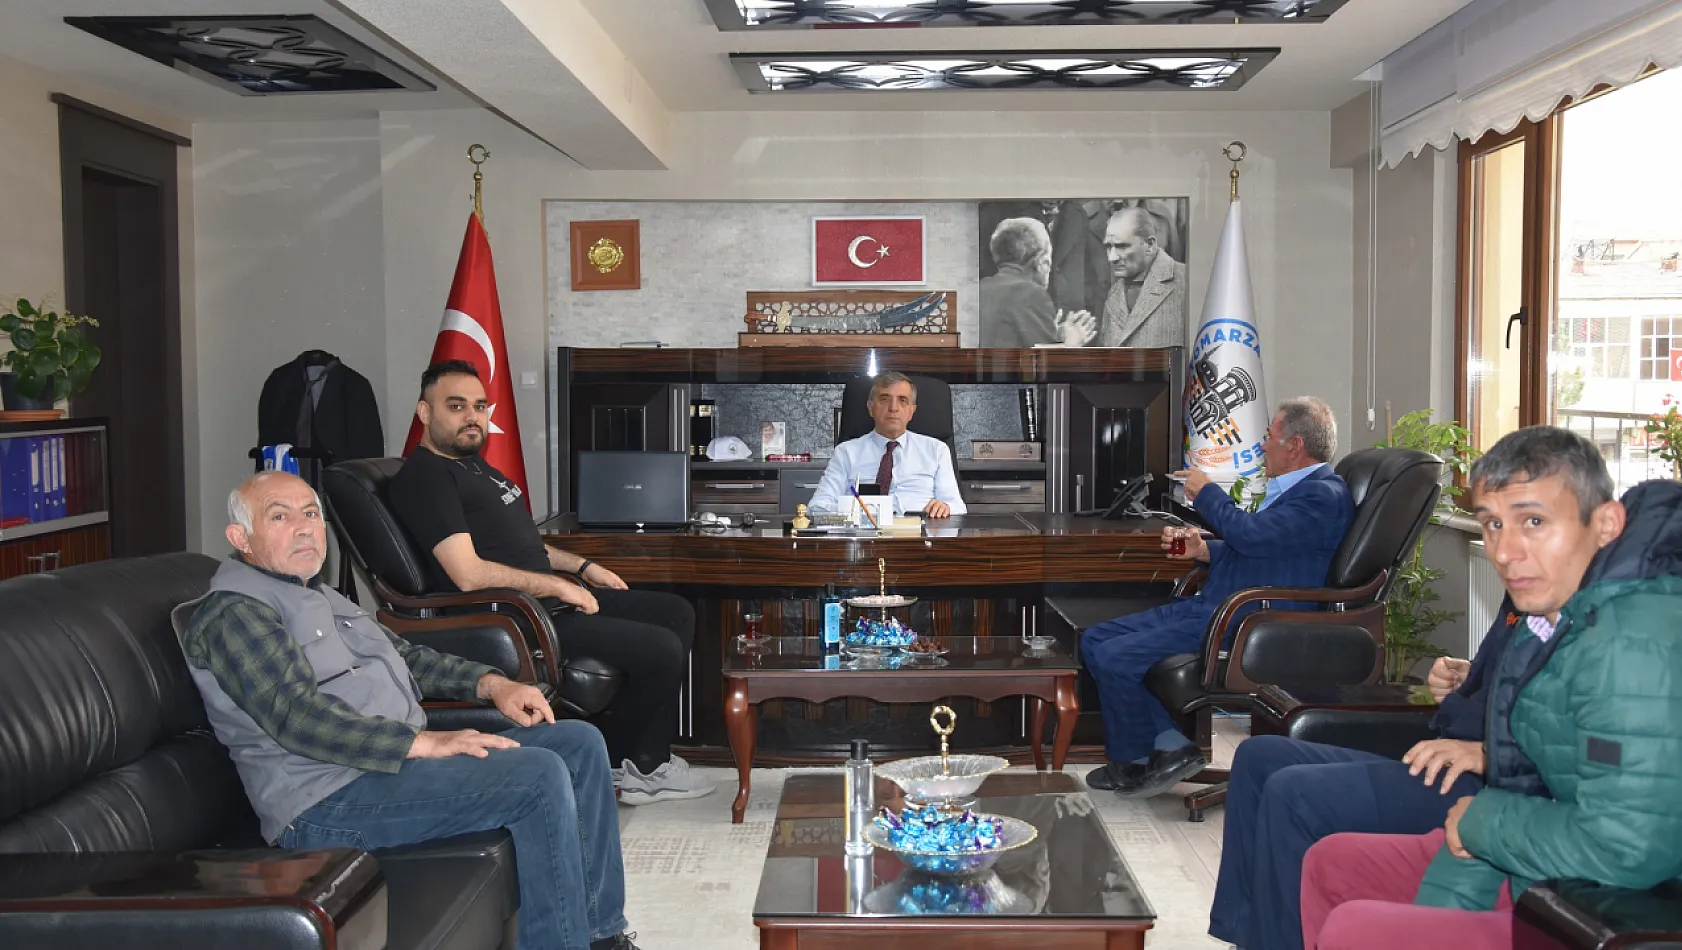 Kayseri'de yeni seçilen Belediye Başkanı o fotoğrafı bakın nereye astı!